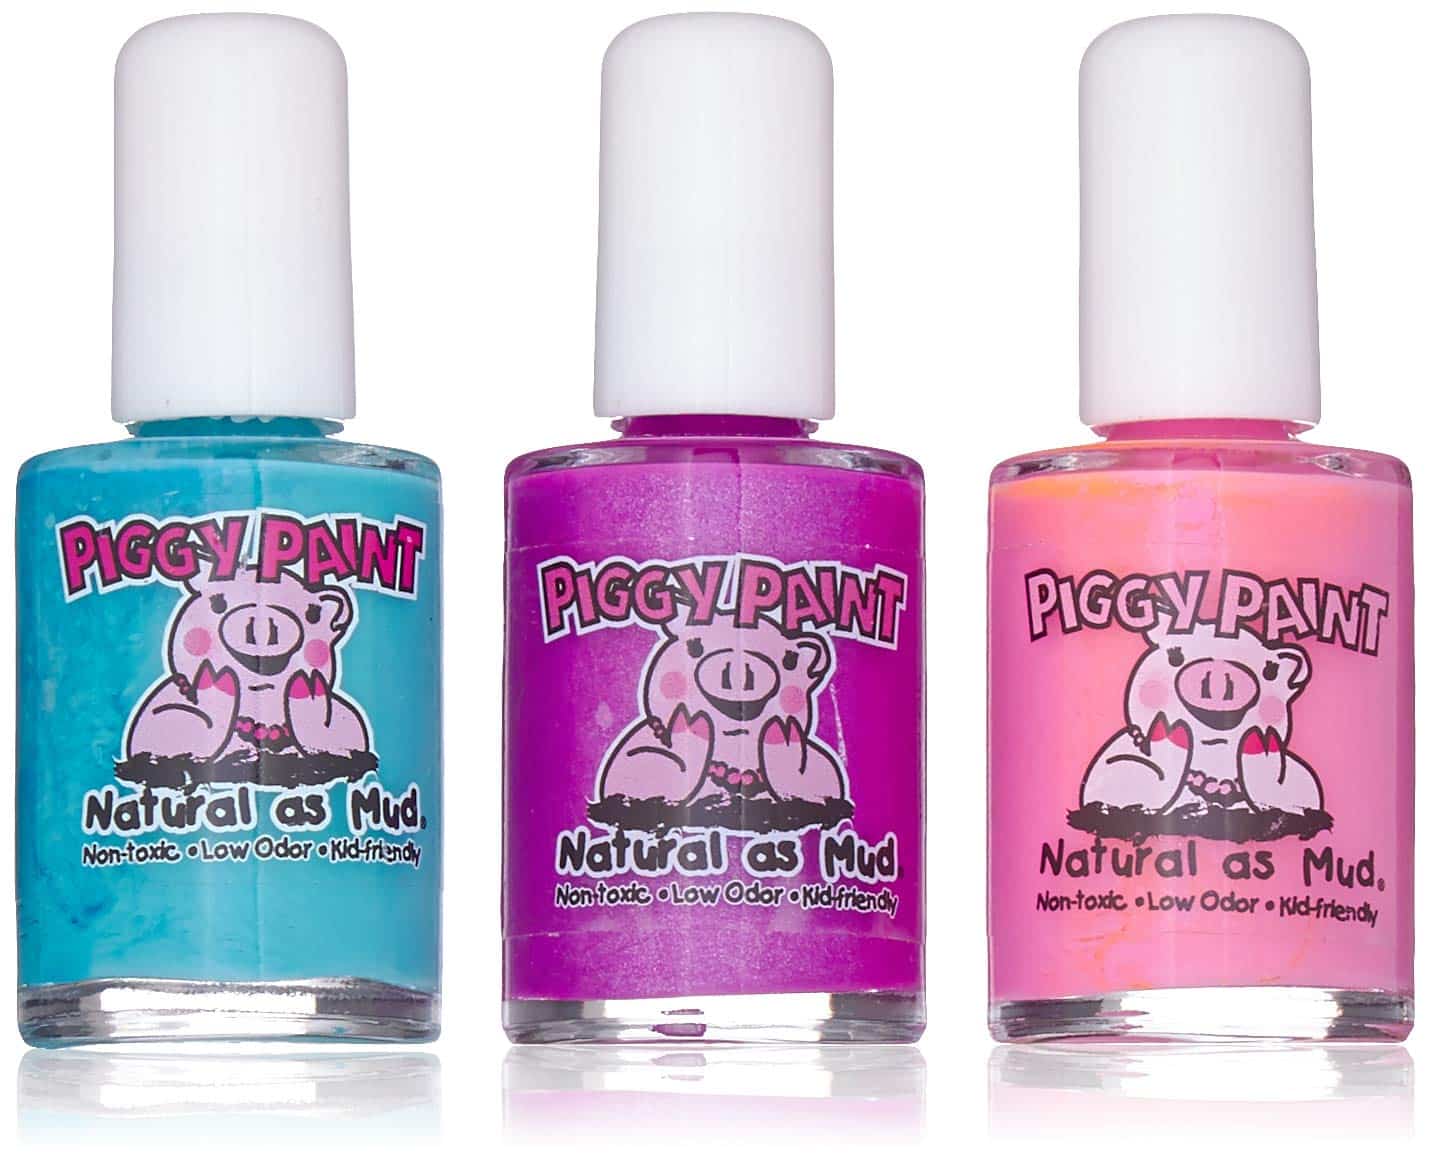 Piggy Paint Nail Polish Review - LeafScore